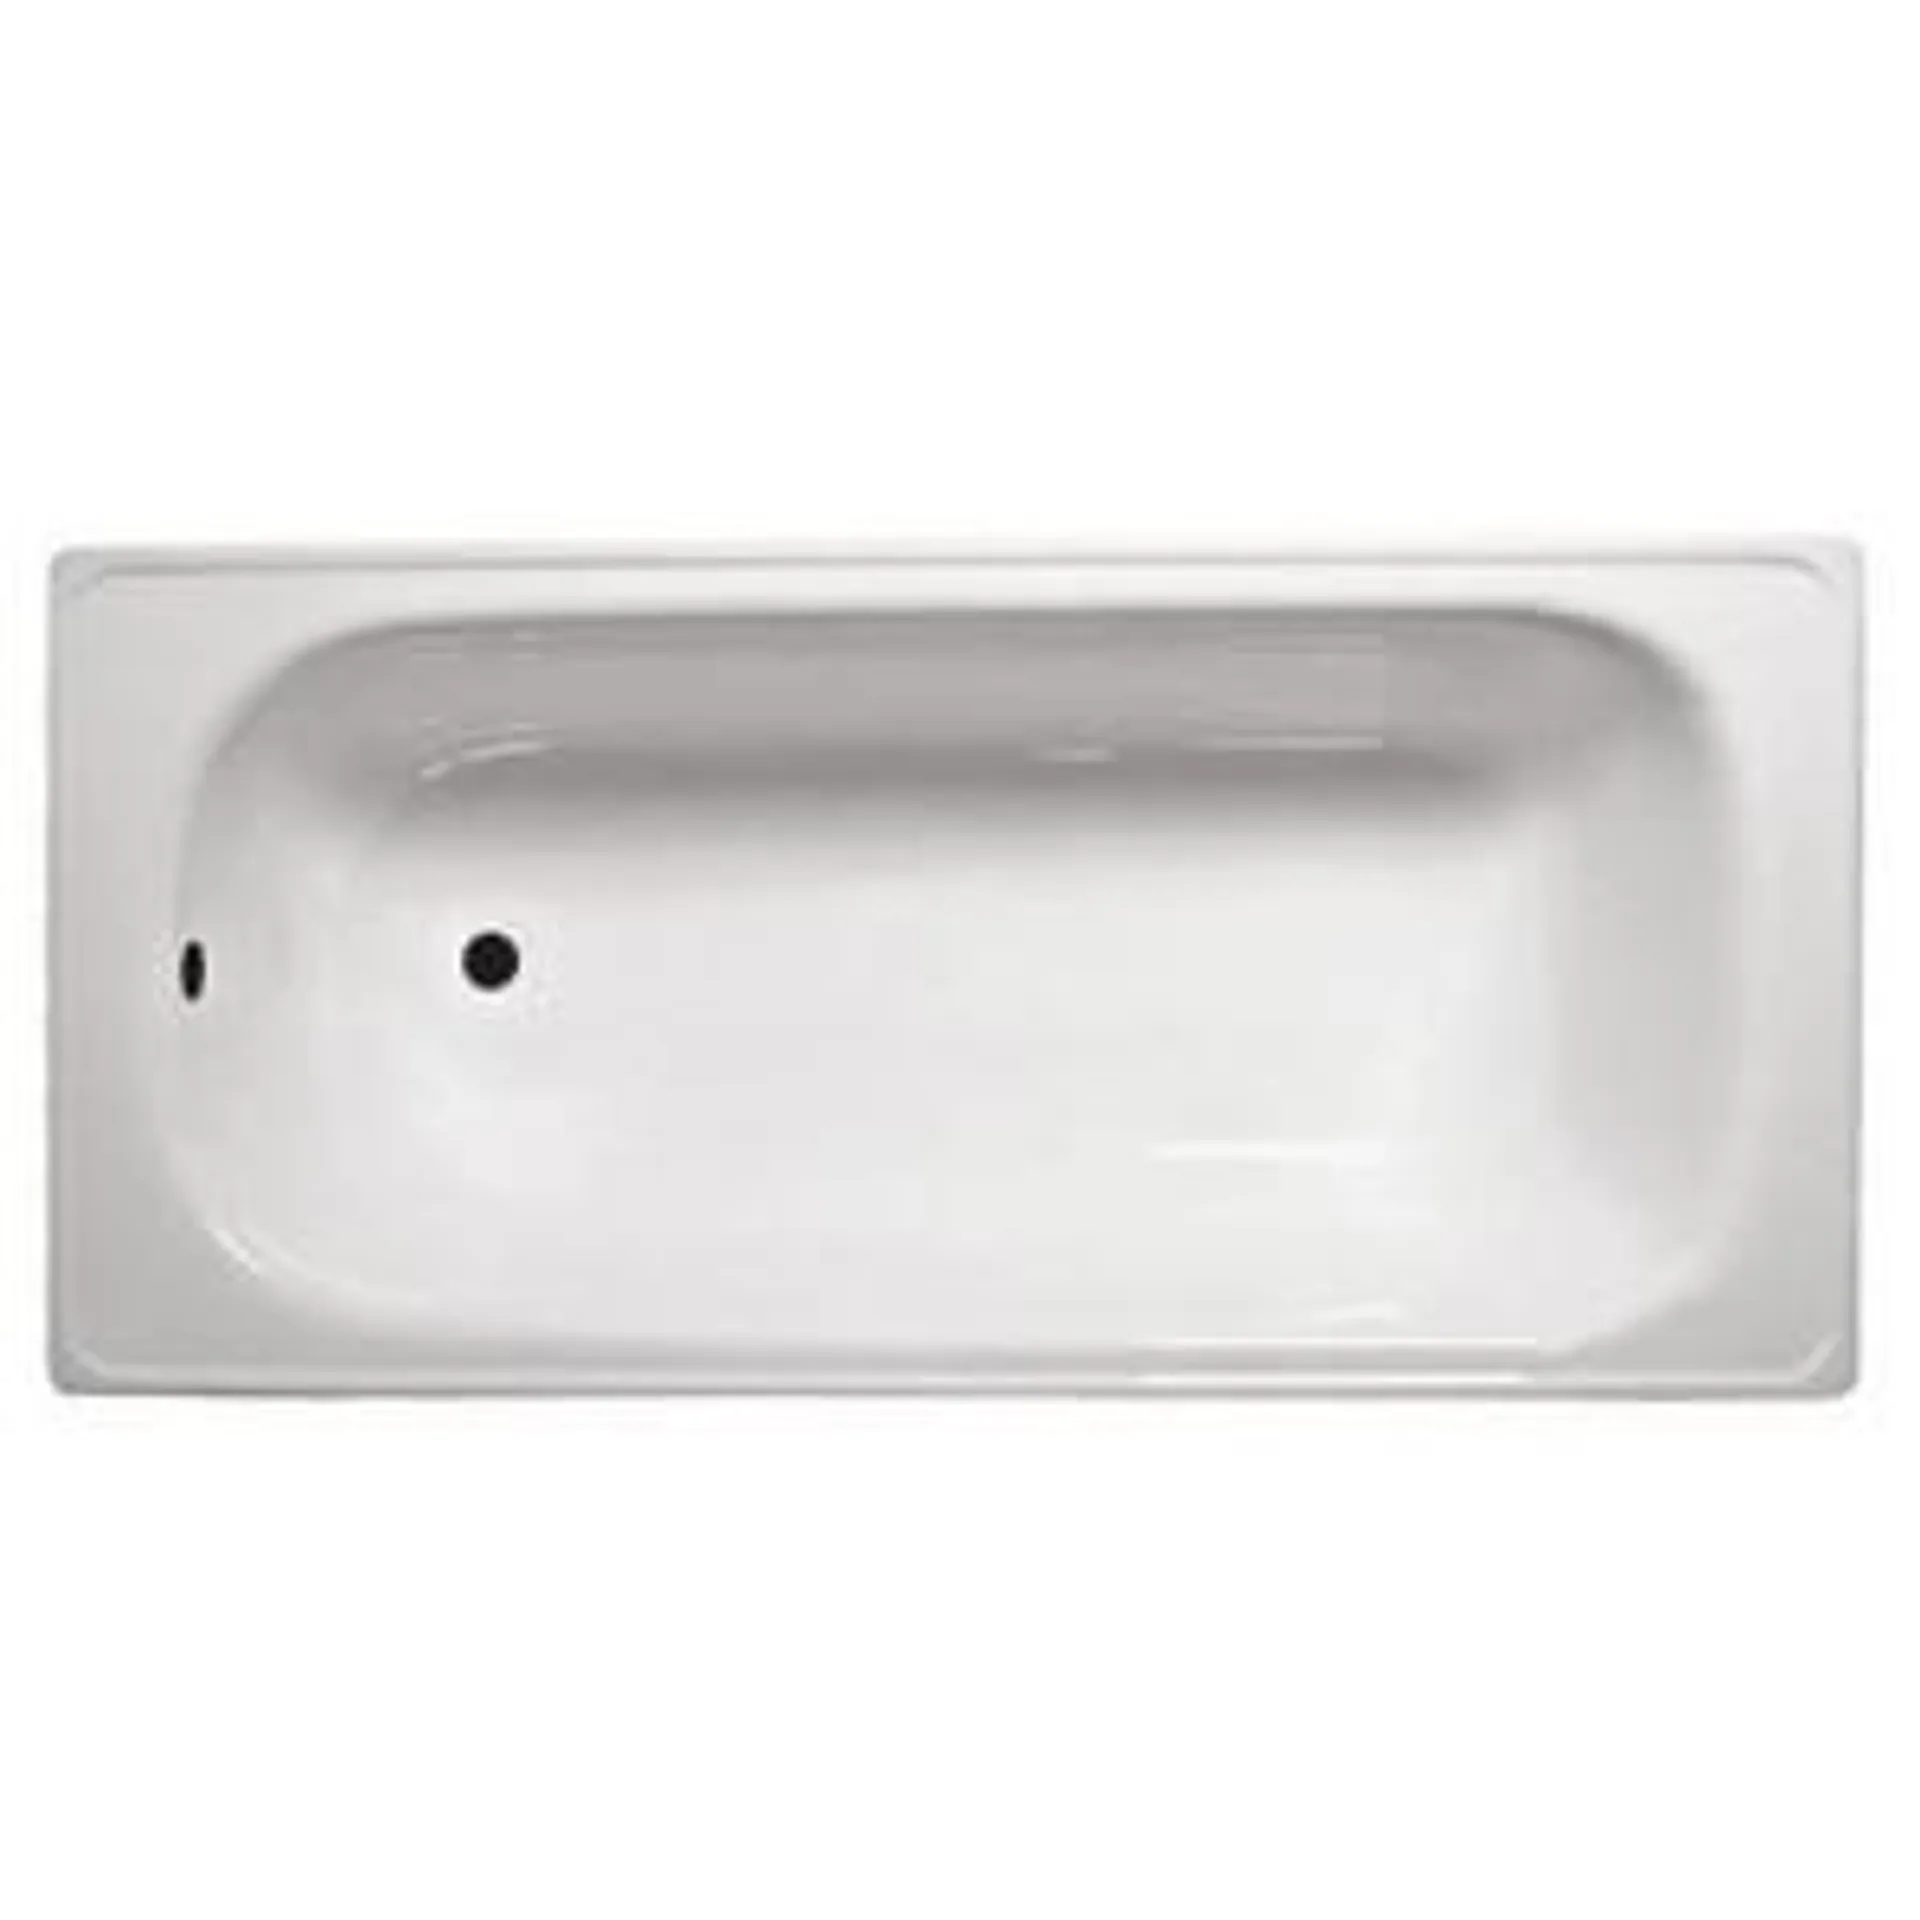 Tina de baño blanca 170x70 cm